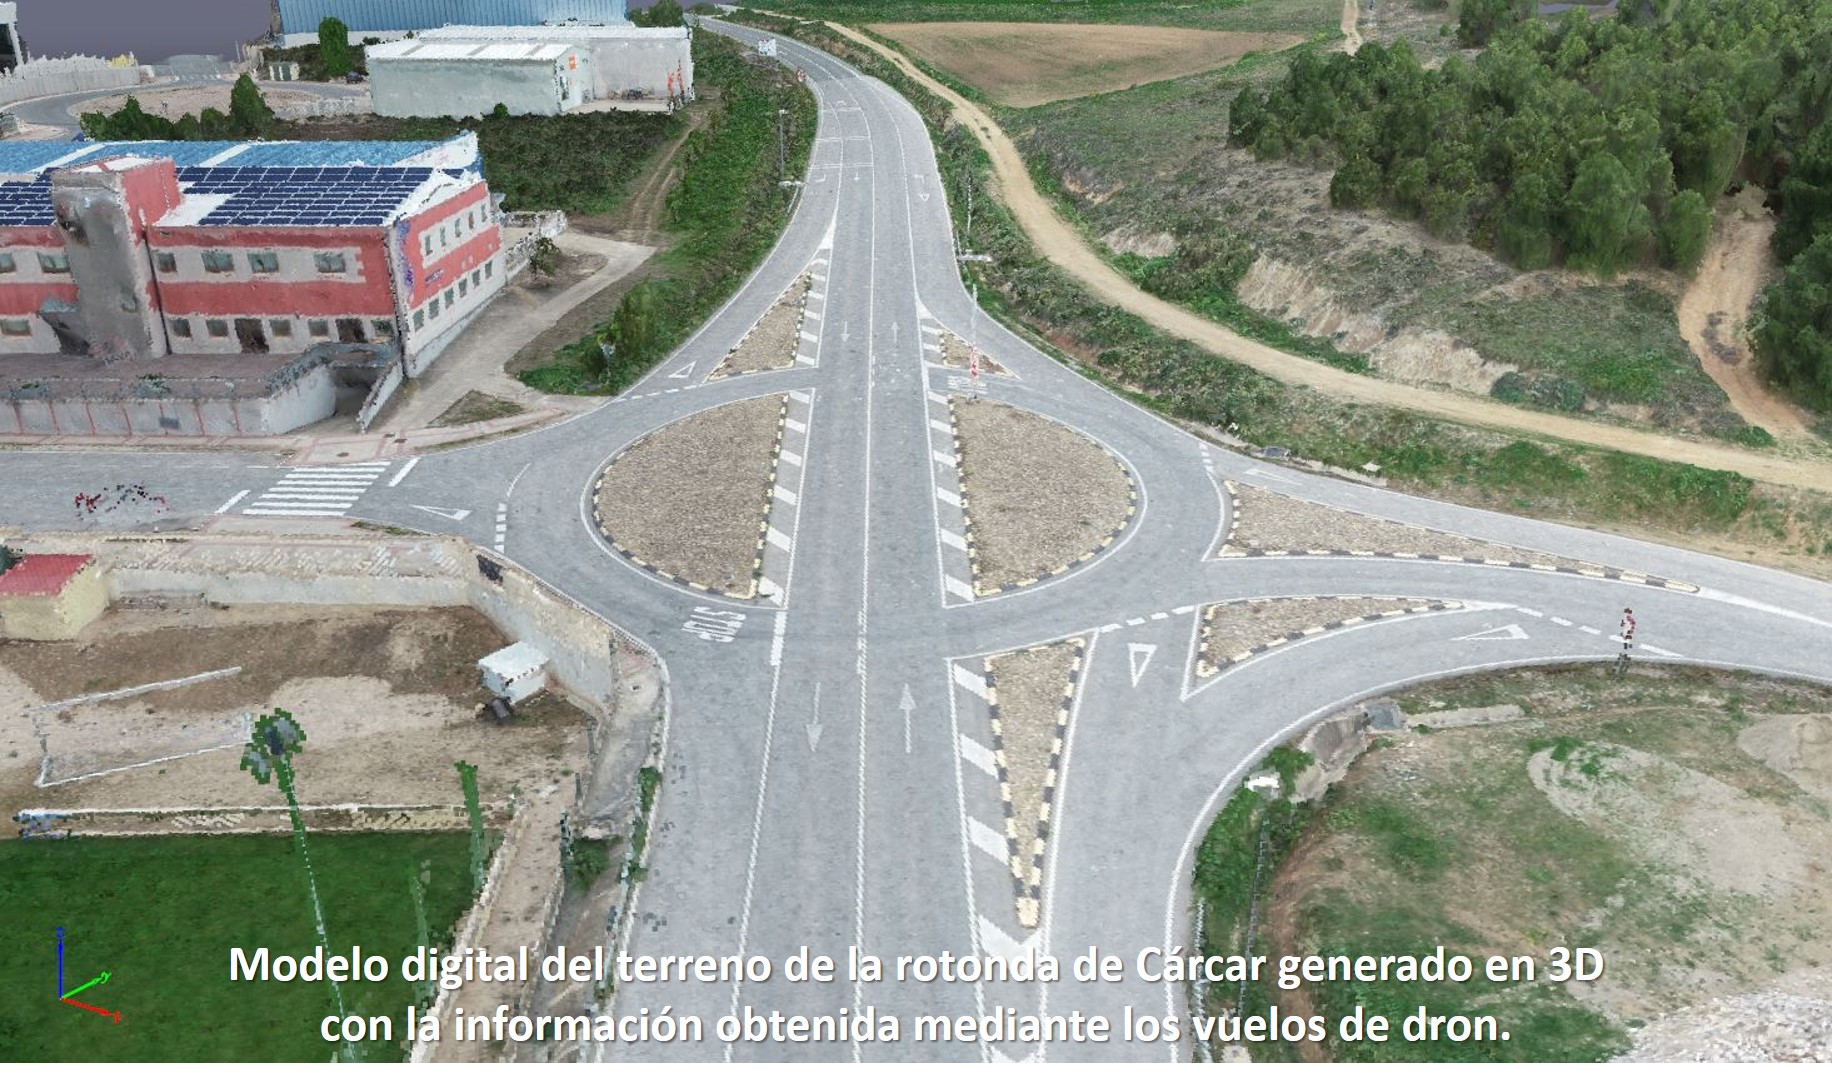 Modelo digital del terreno de la rotonda de Cárcar generado en 3D con la información obtenida mediante los vuelos de dron